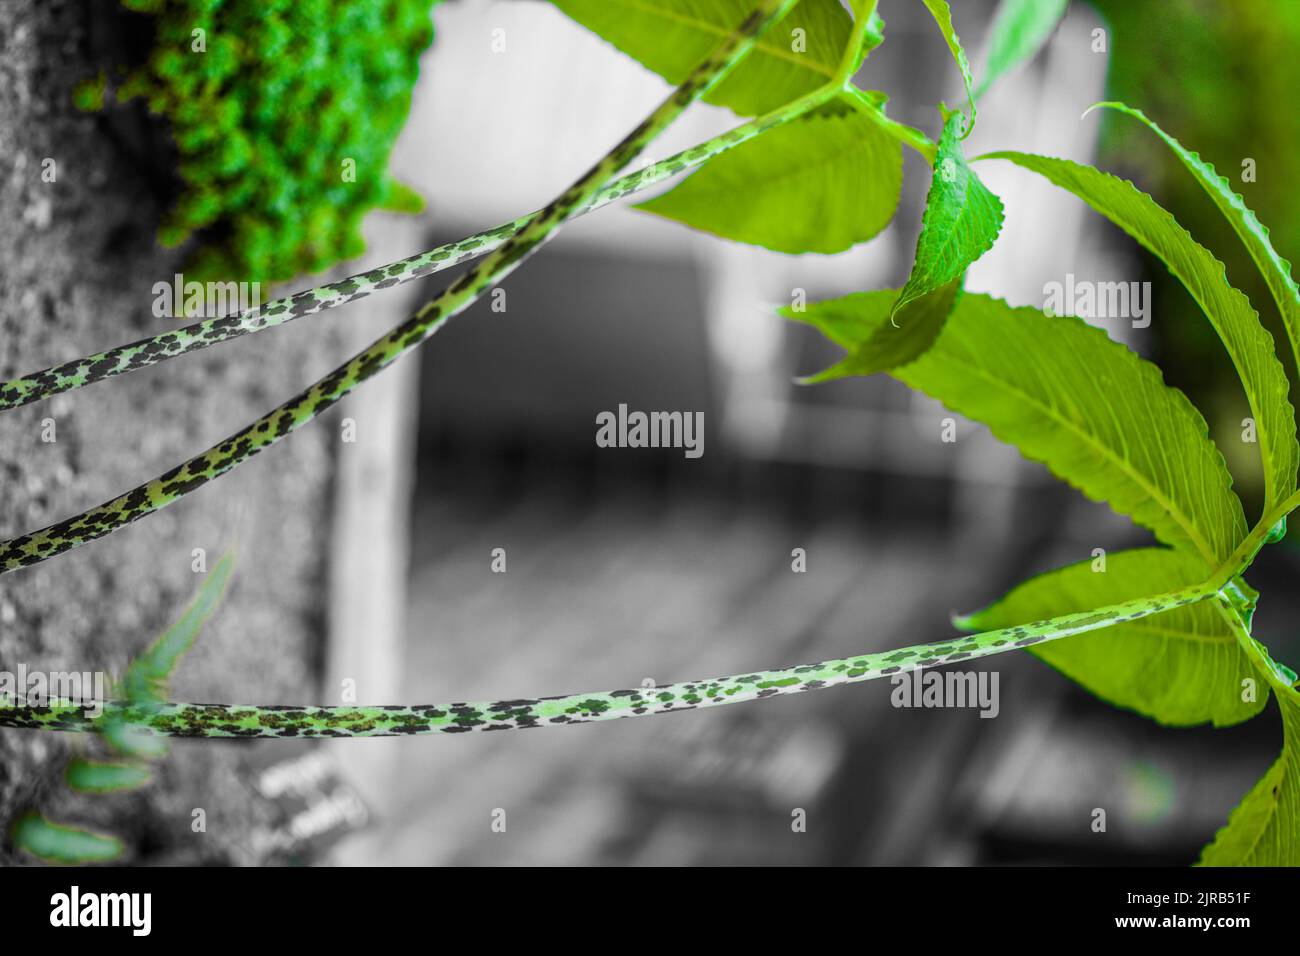 Japanese Plant Abstract Green Dragon Arum , Pinellia tripartita Stock Photo